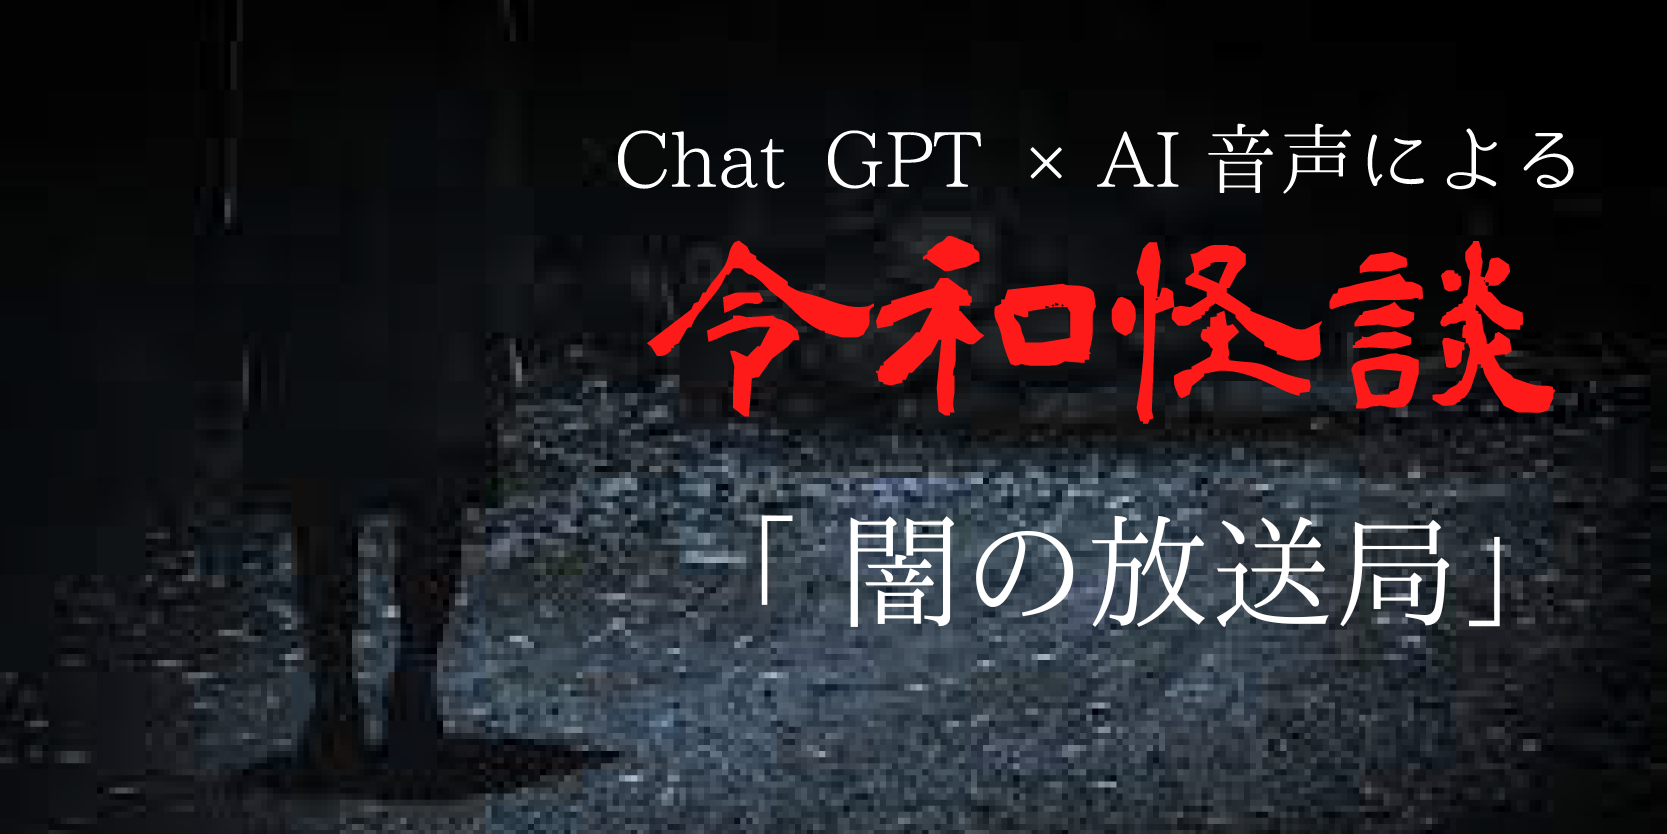 Chat gpt×AI音声による令和怪談『闇の放送局』